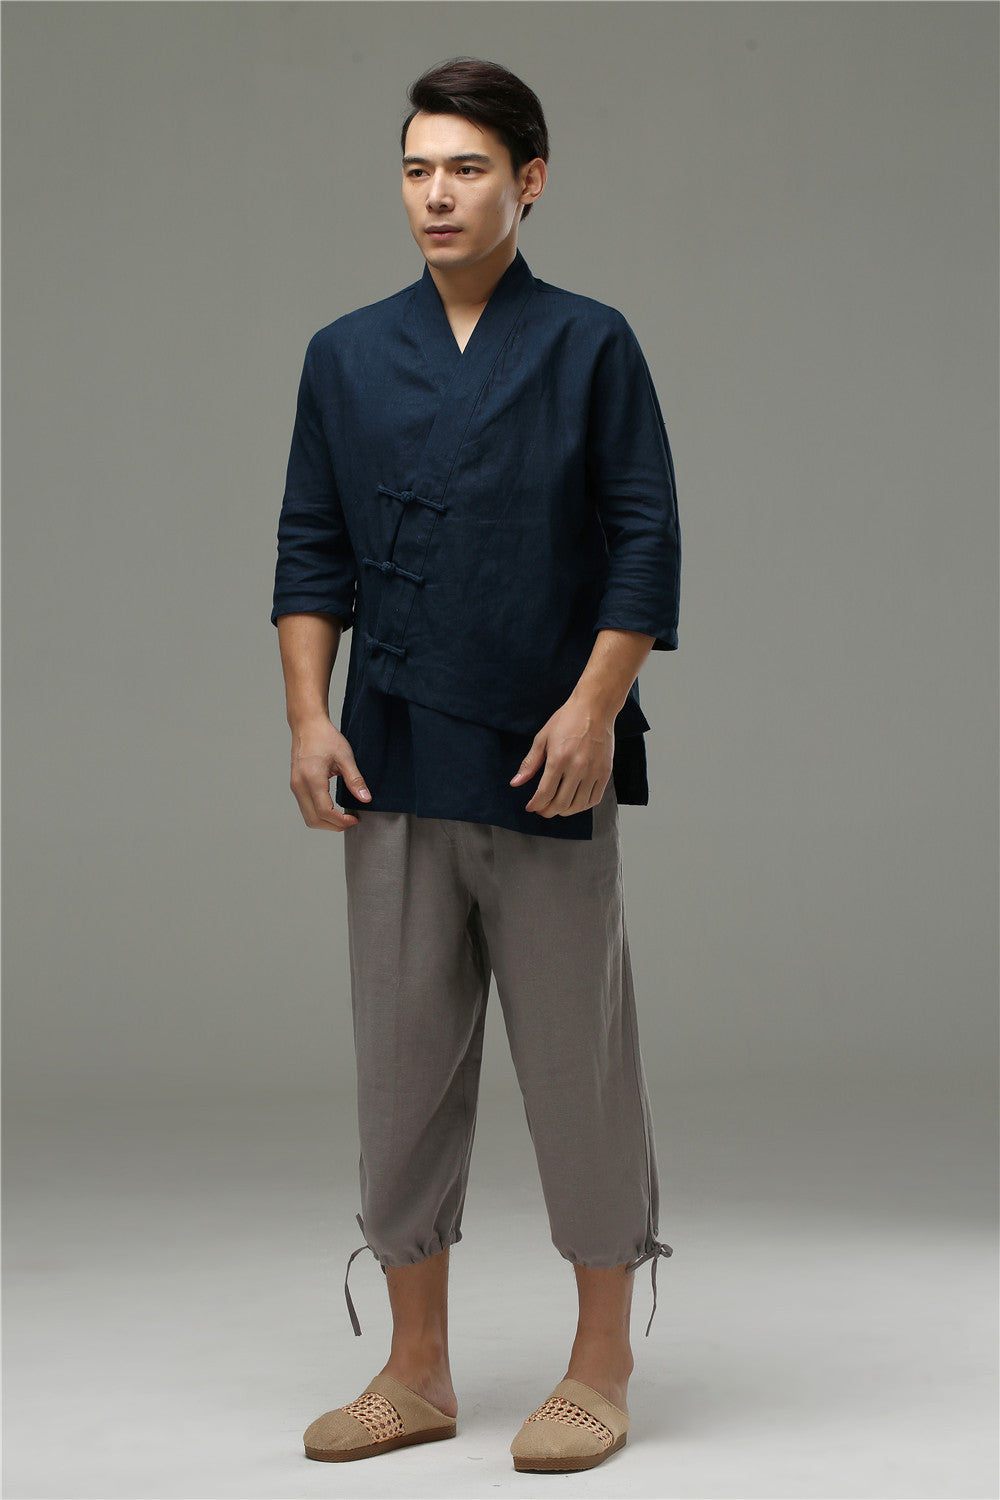 Men's Linen Trousers - 100% Capri collection for Man